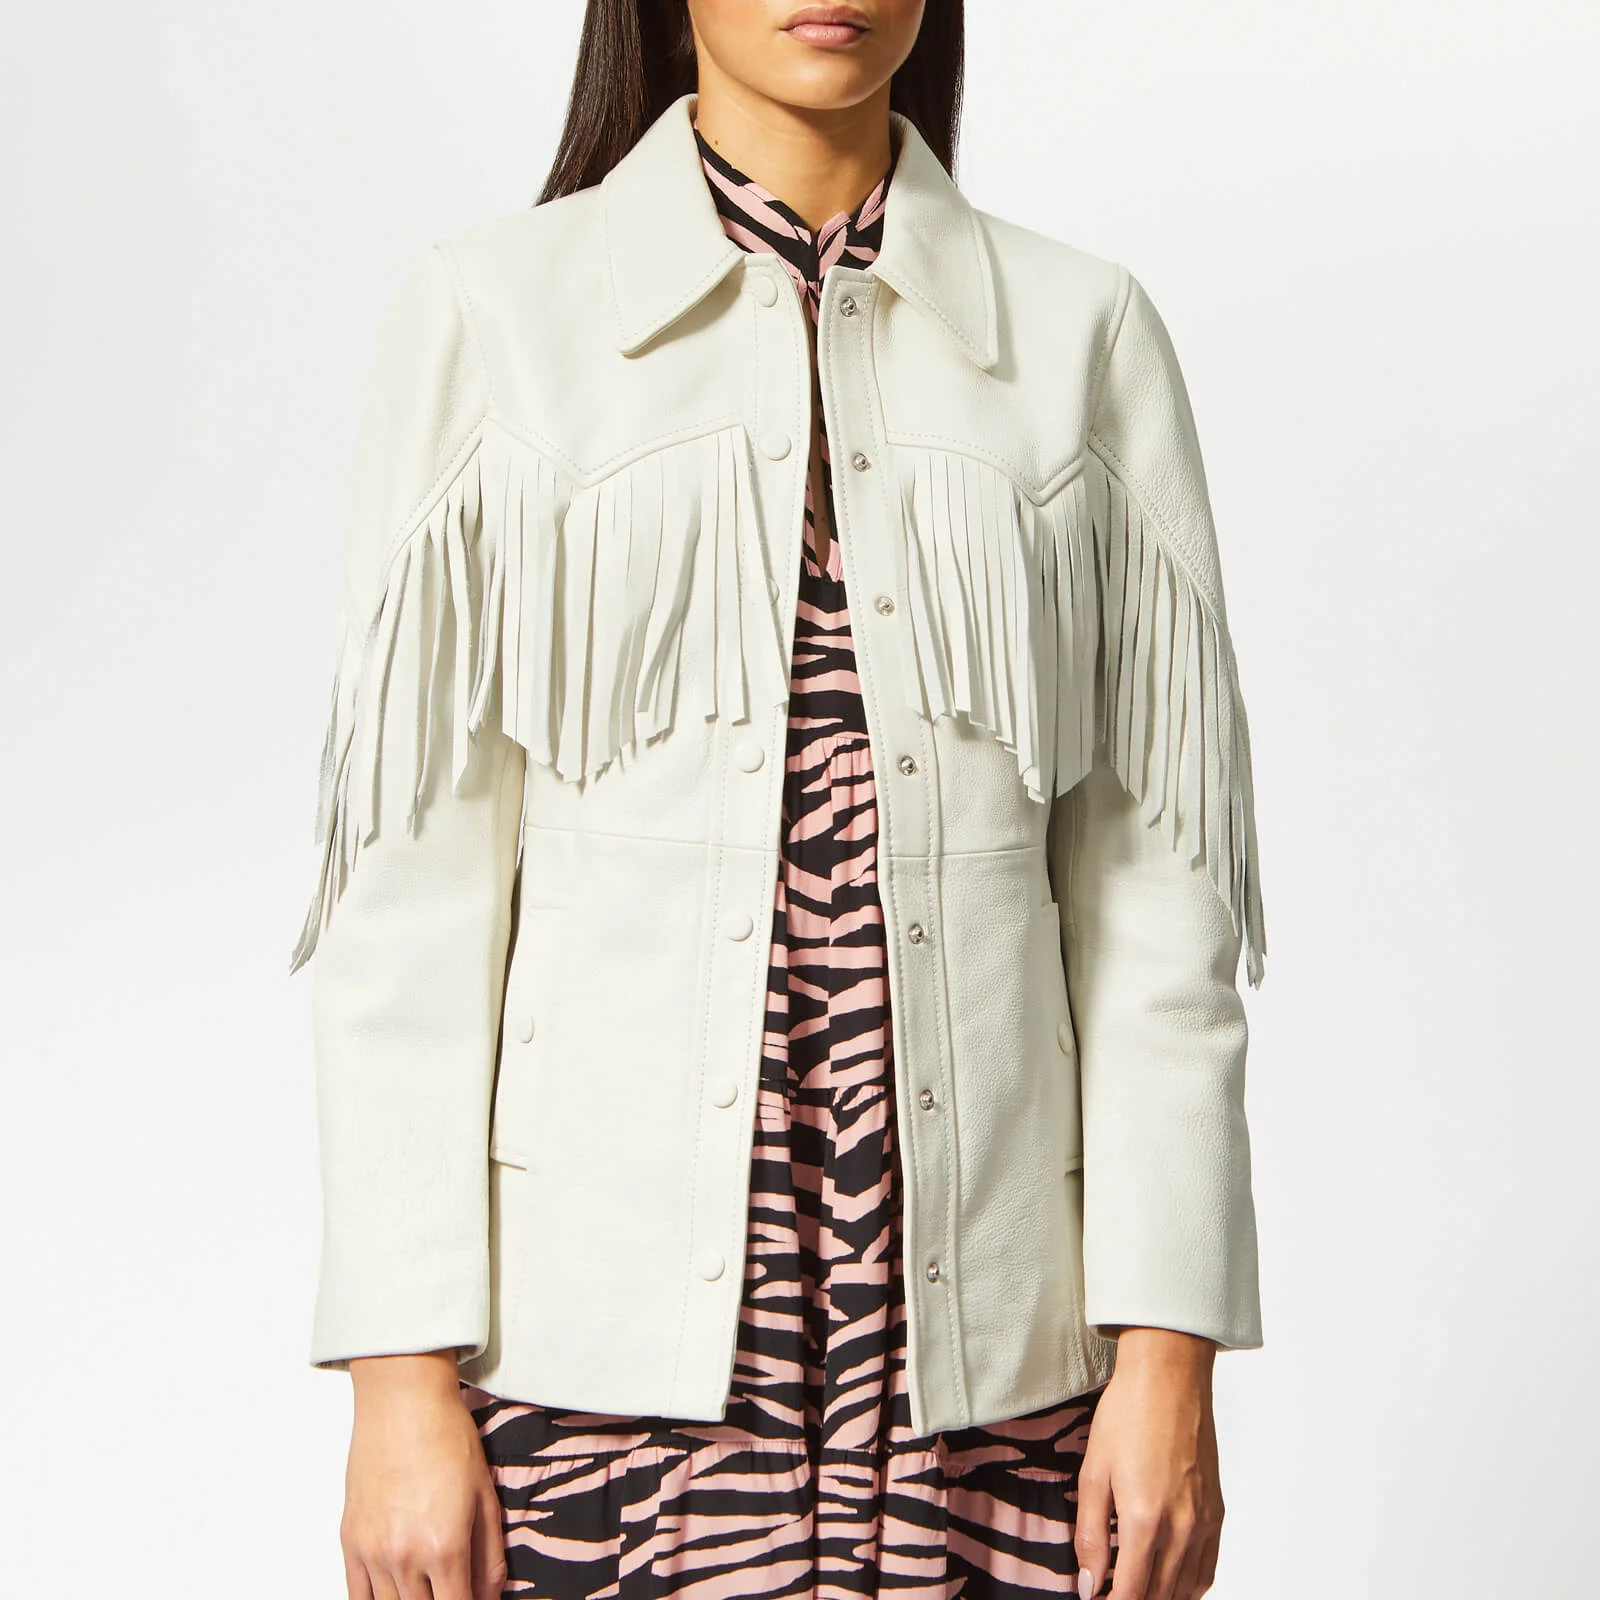 Ganni Women's Angela Leather Jacket - Egret Image 1